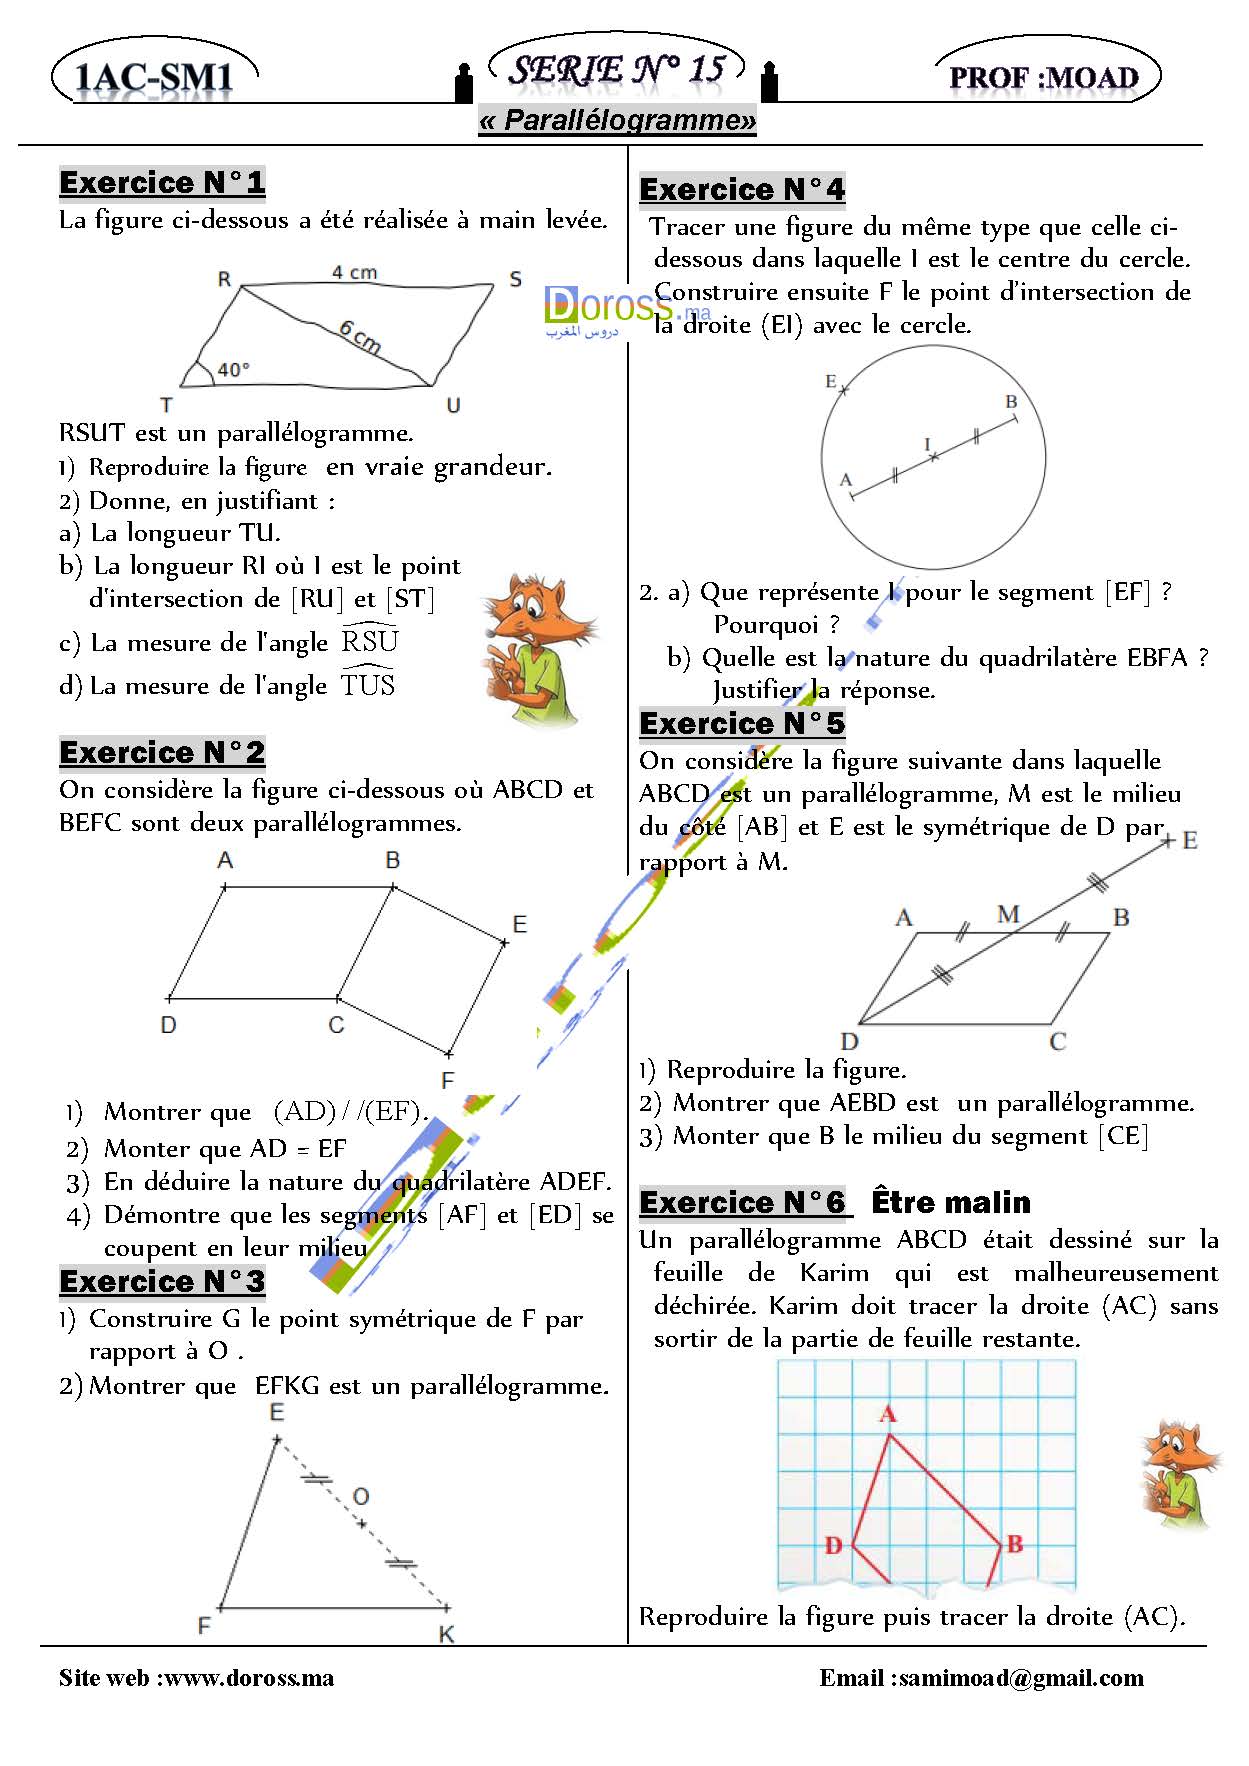 تمارين الرياضيات :série 15 -parallélogramme | الأولى إعدادي خيار فرنسي